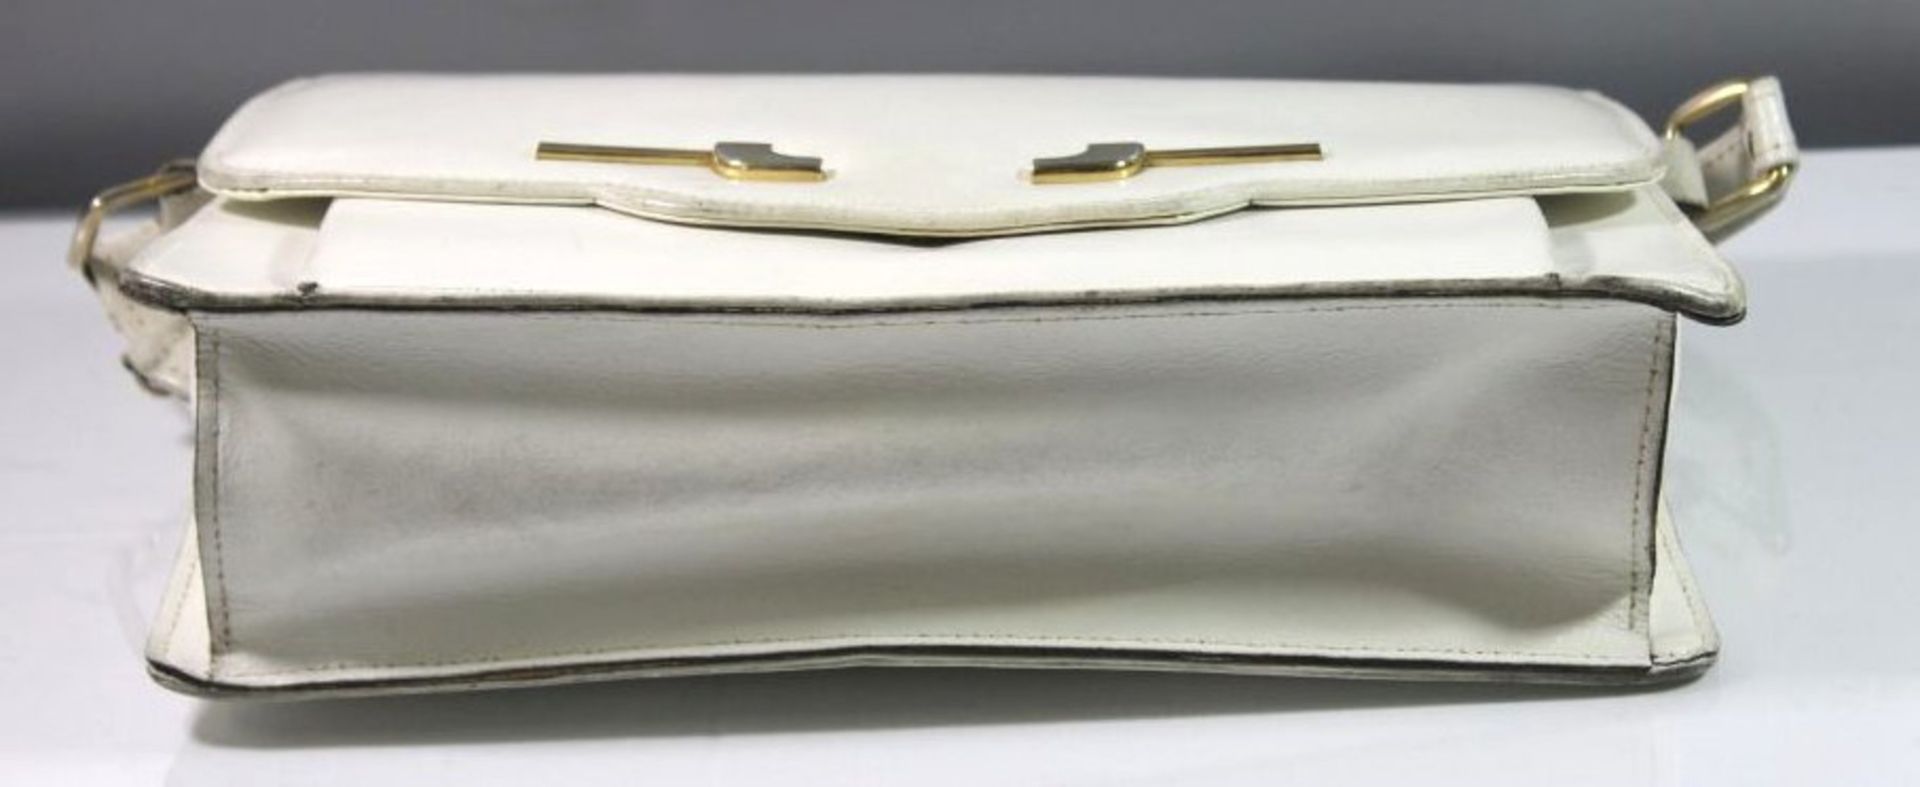 Damenhandtasche, weisses Leder, Tragespuren und Beschädigungen, älter, 19 x 28cm. - Bild 5 aus 5